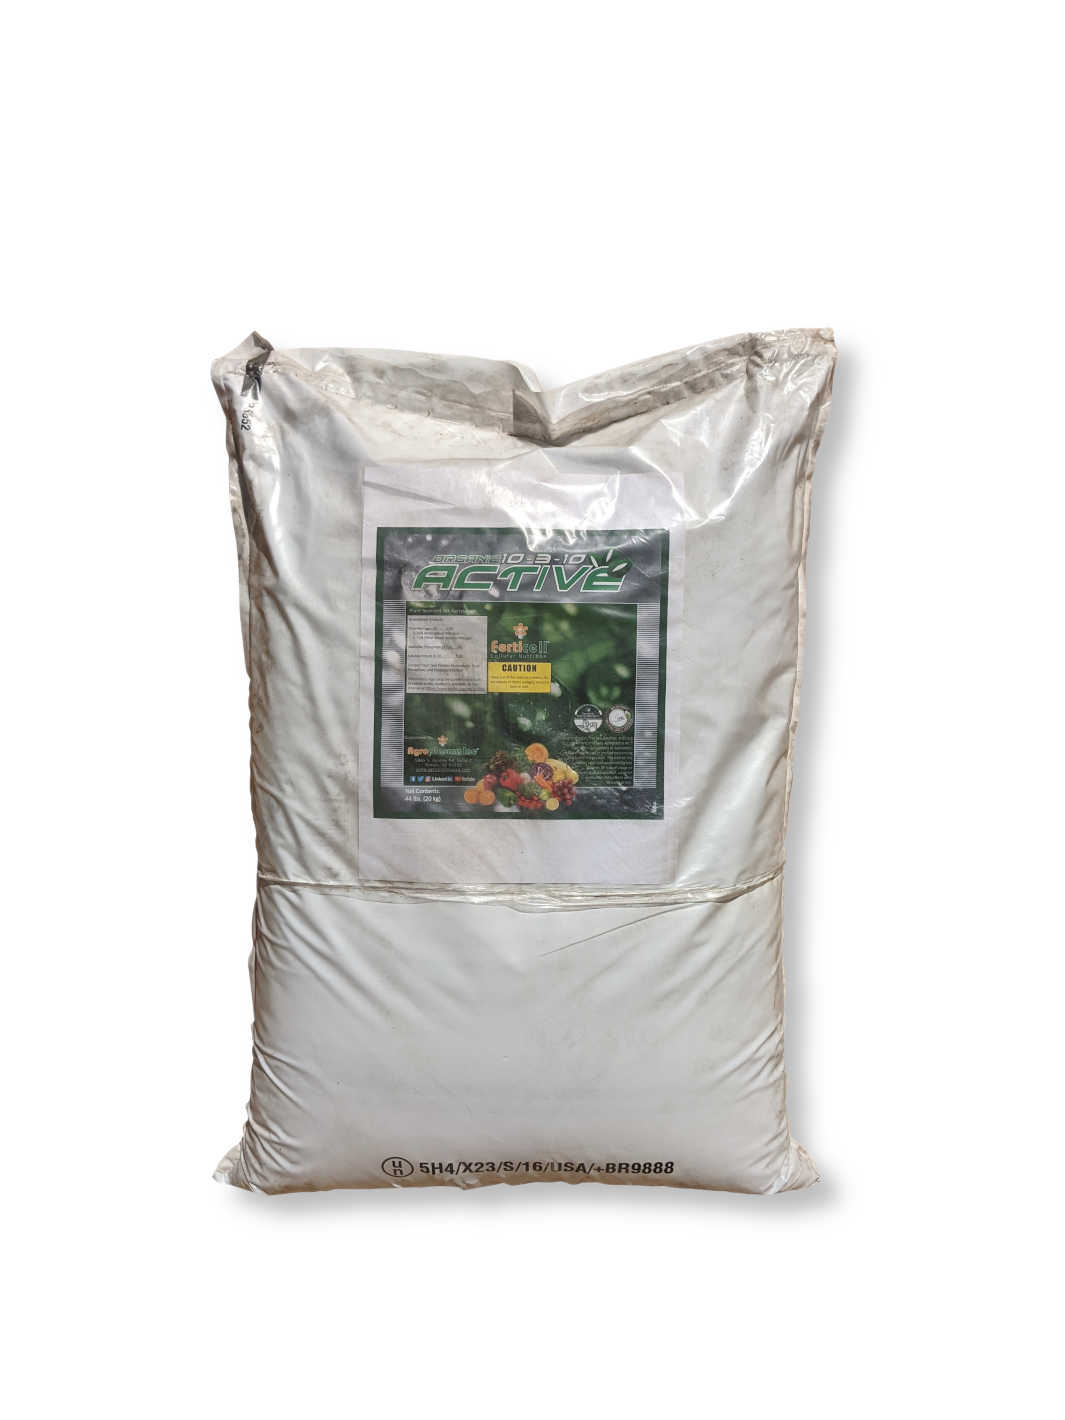 40lb Bag of Active 10-3-10 Organic Fertilizer